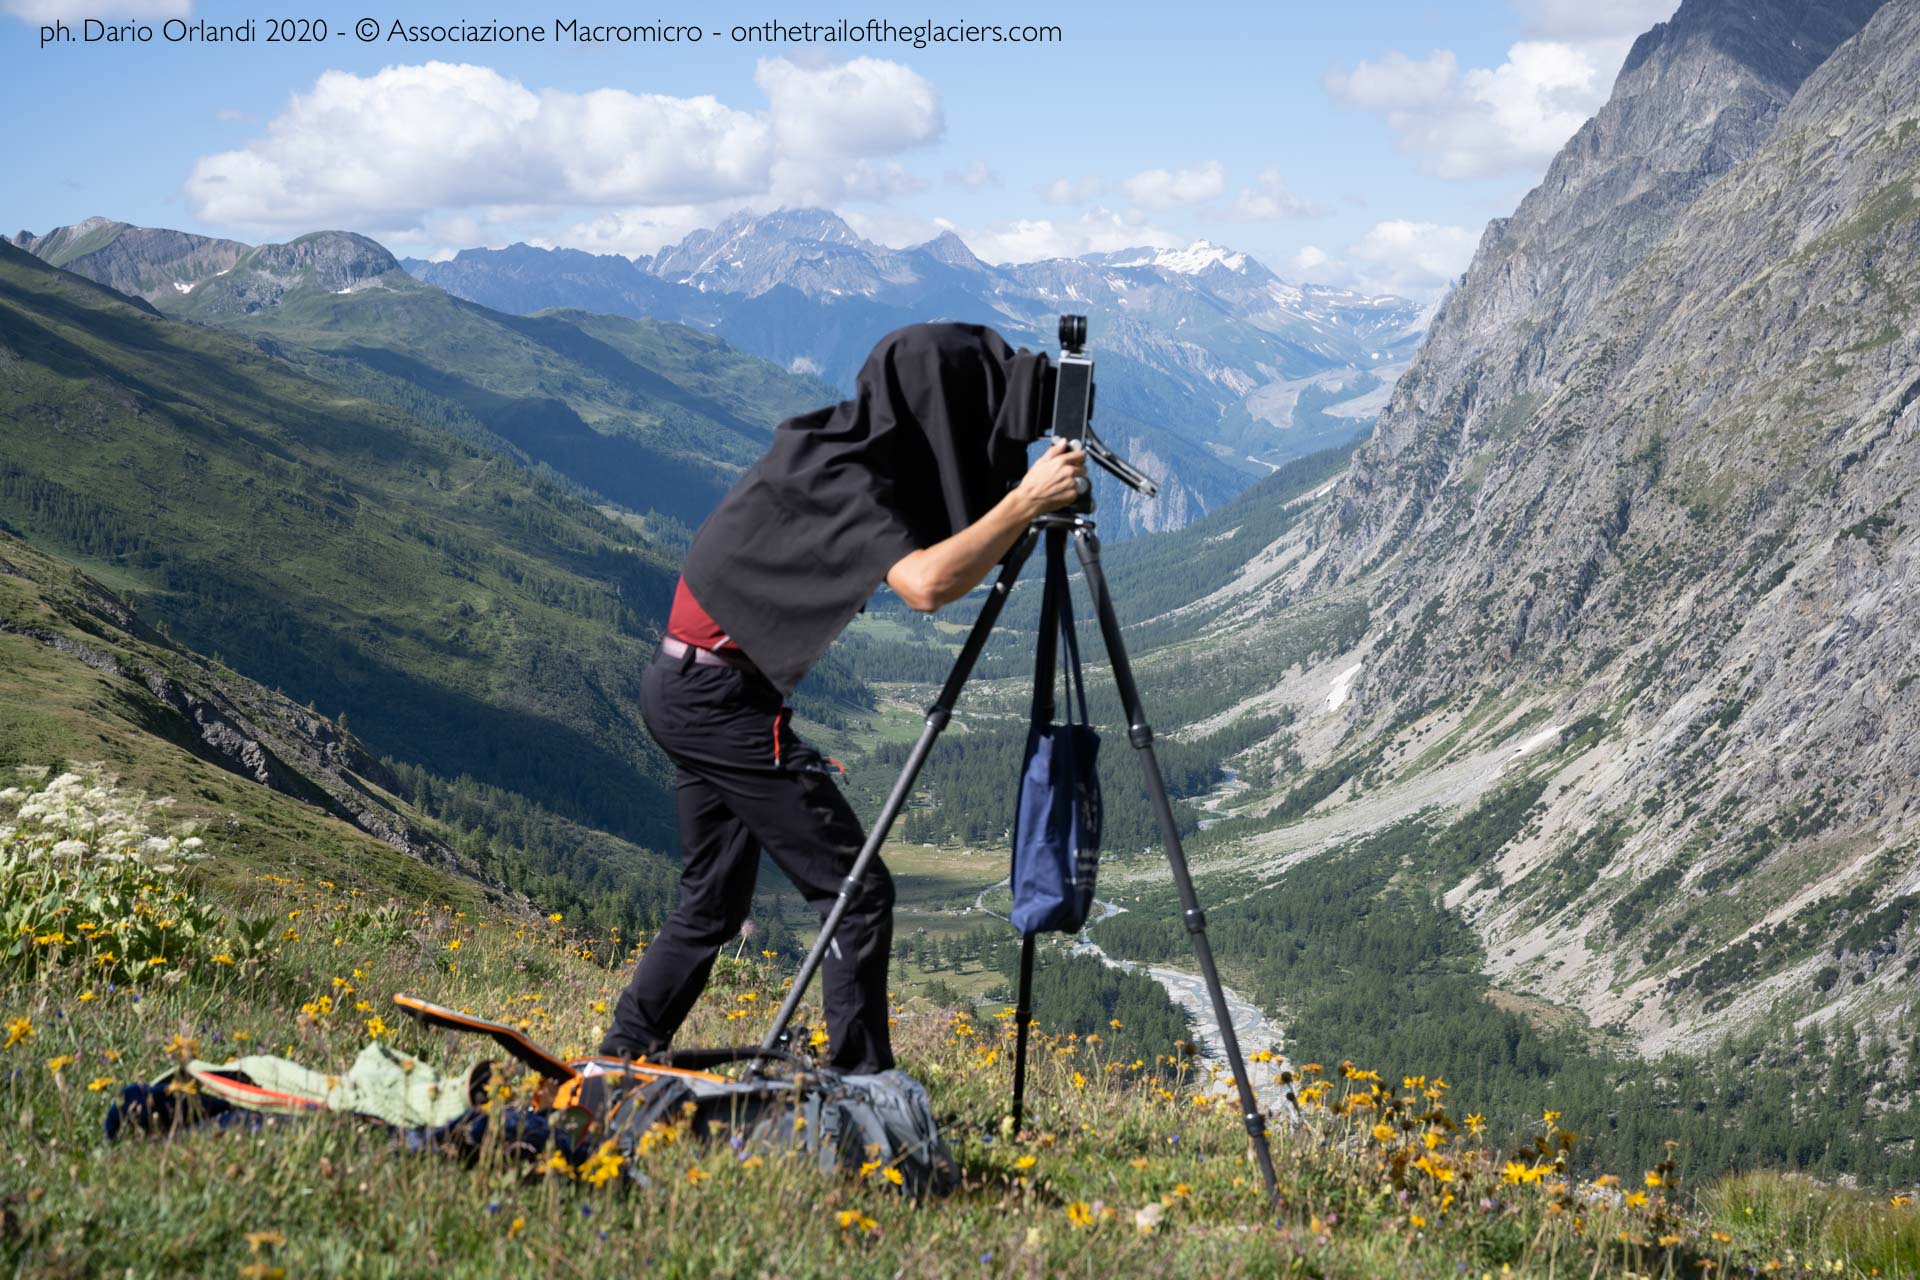 Courmayeur (Aosta), lavoro sul campo durante la spedizione. Spedizione "Sulle tracce dei ghiacciai - Alpi 2020". Fotografia di Dario Orlandi 2020 - © Associazione Macromicro - onthetrailoftheglaciers.com